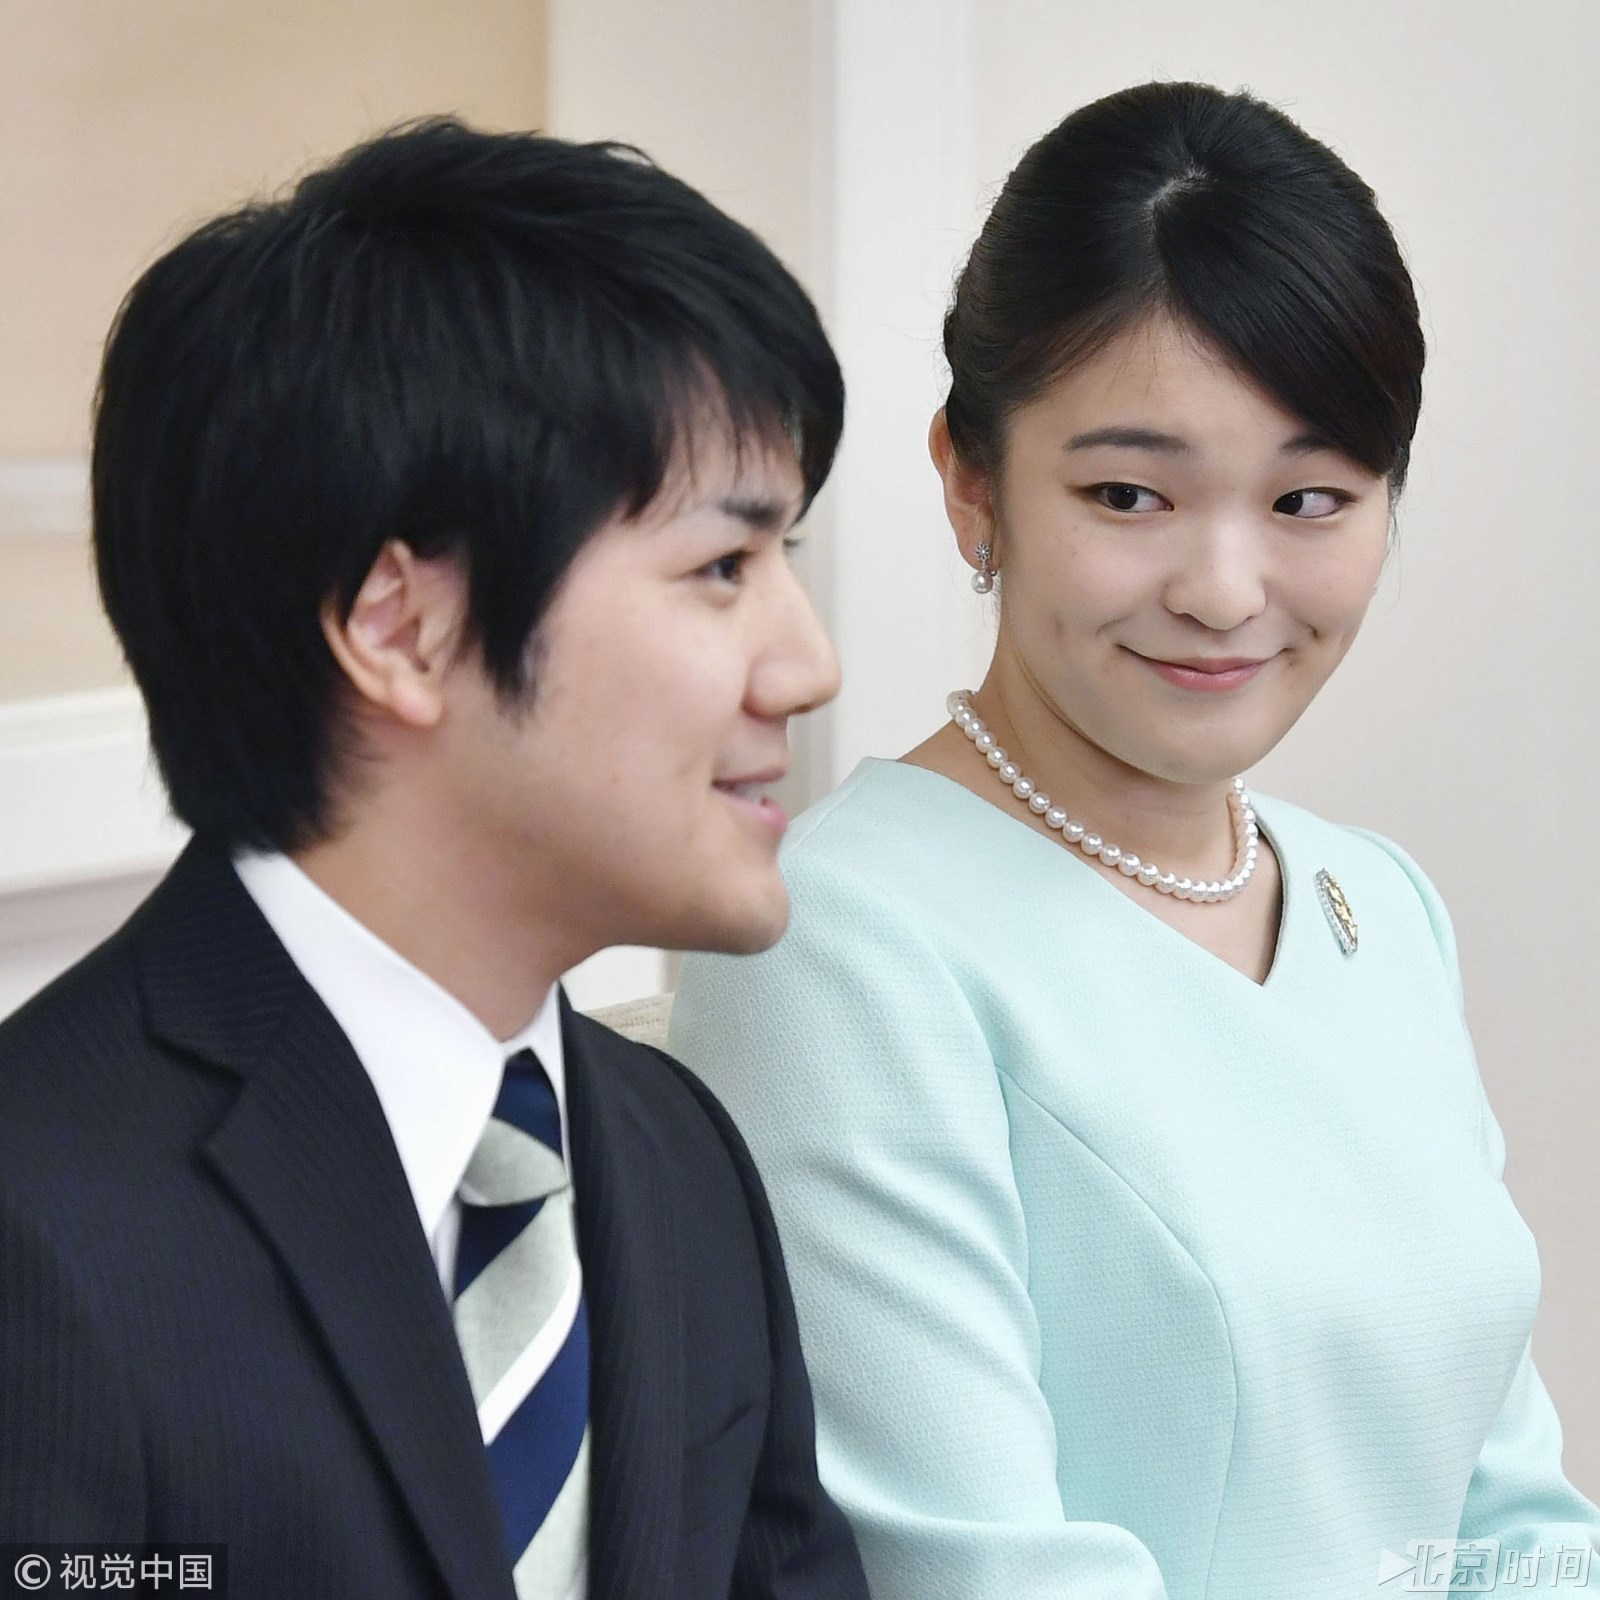 日本真子公主或在明年11月出嫁 天皇皇后或出席婚礼